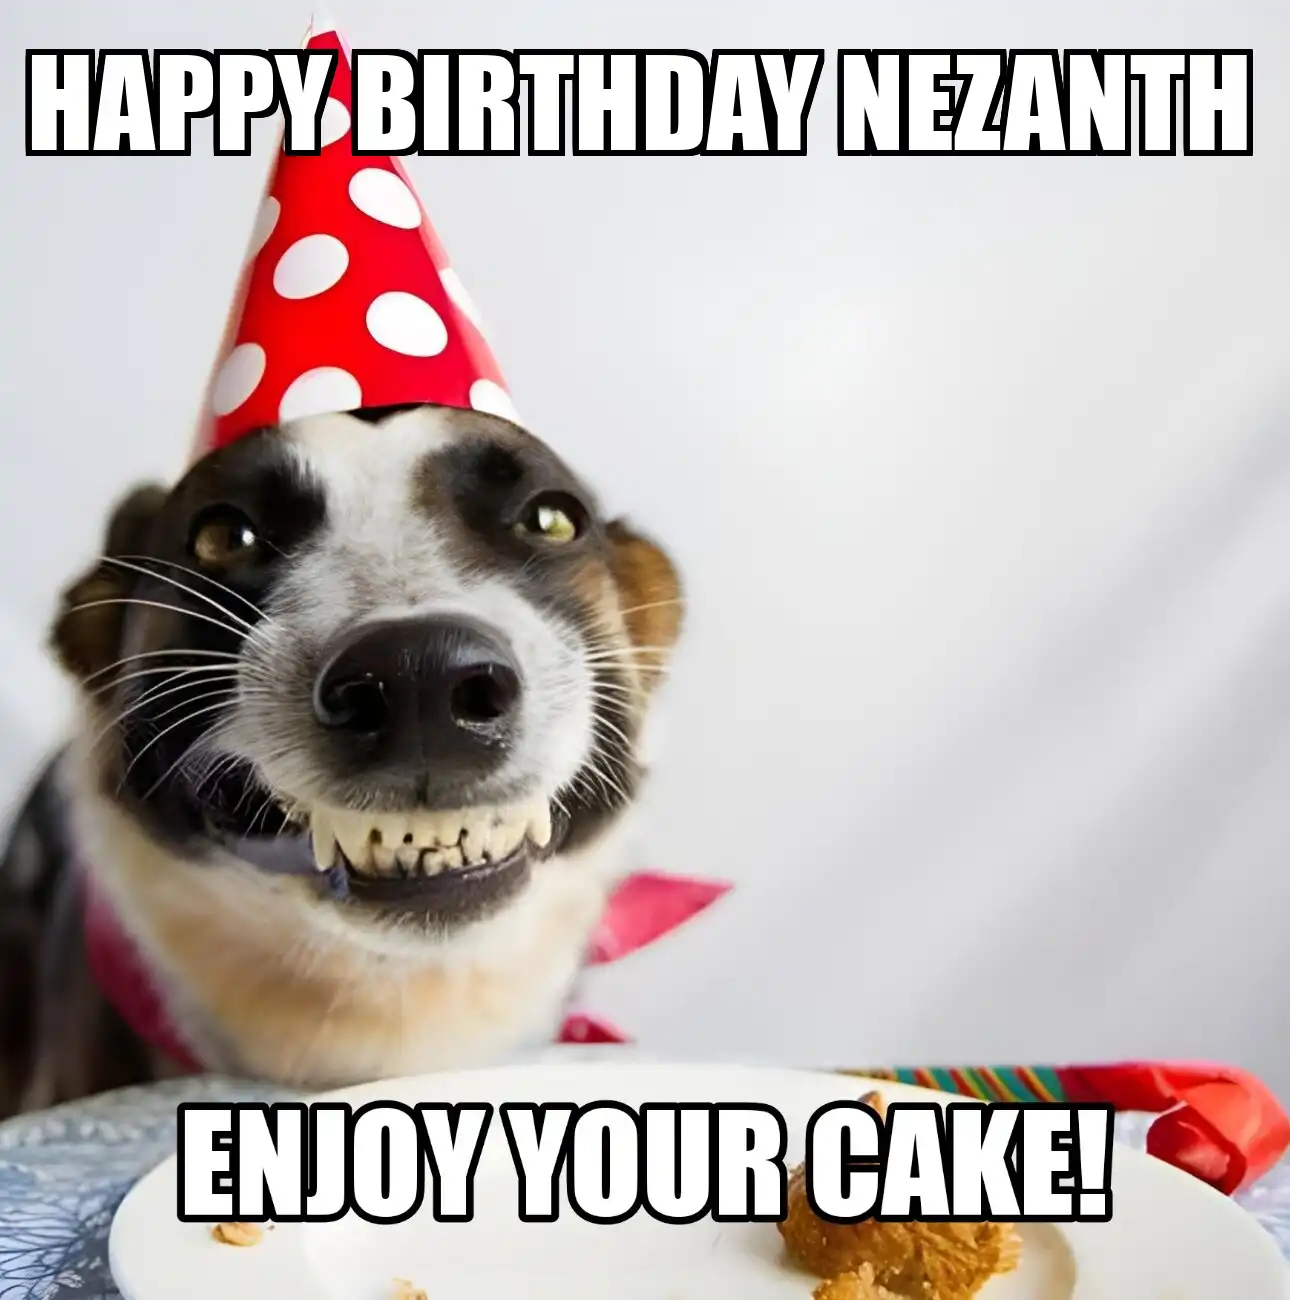 Happy Birthday Nezanth Enjoy Your Cake Dog Meme